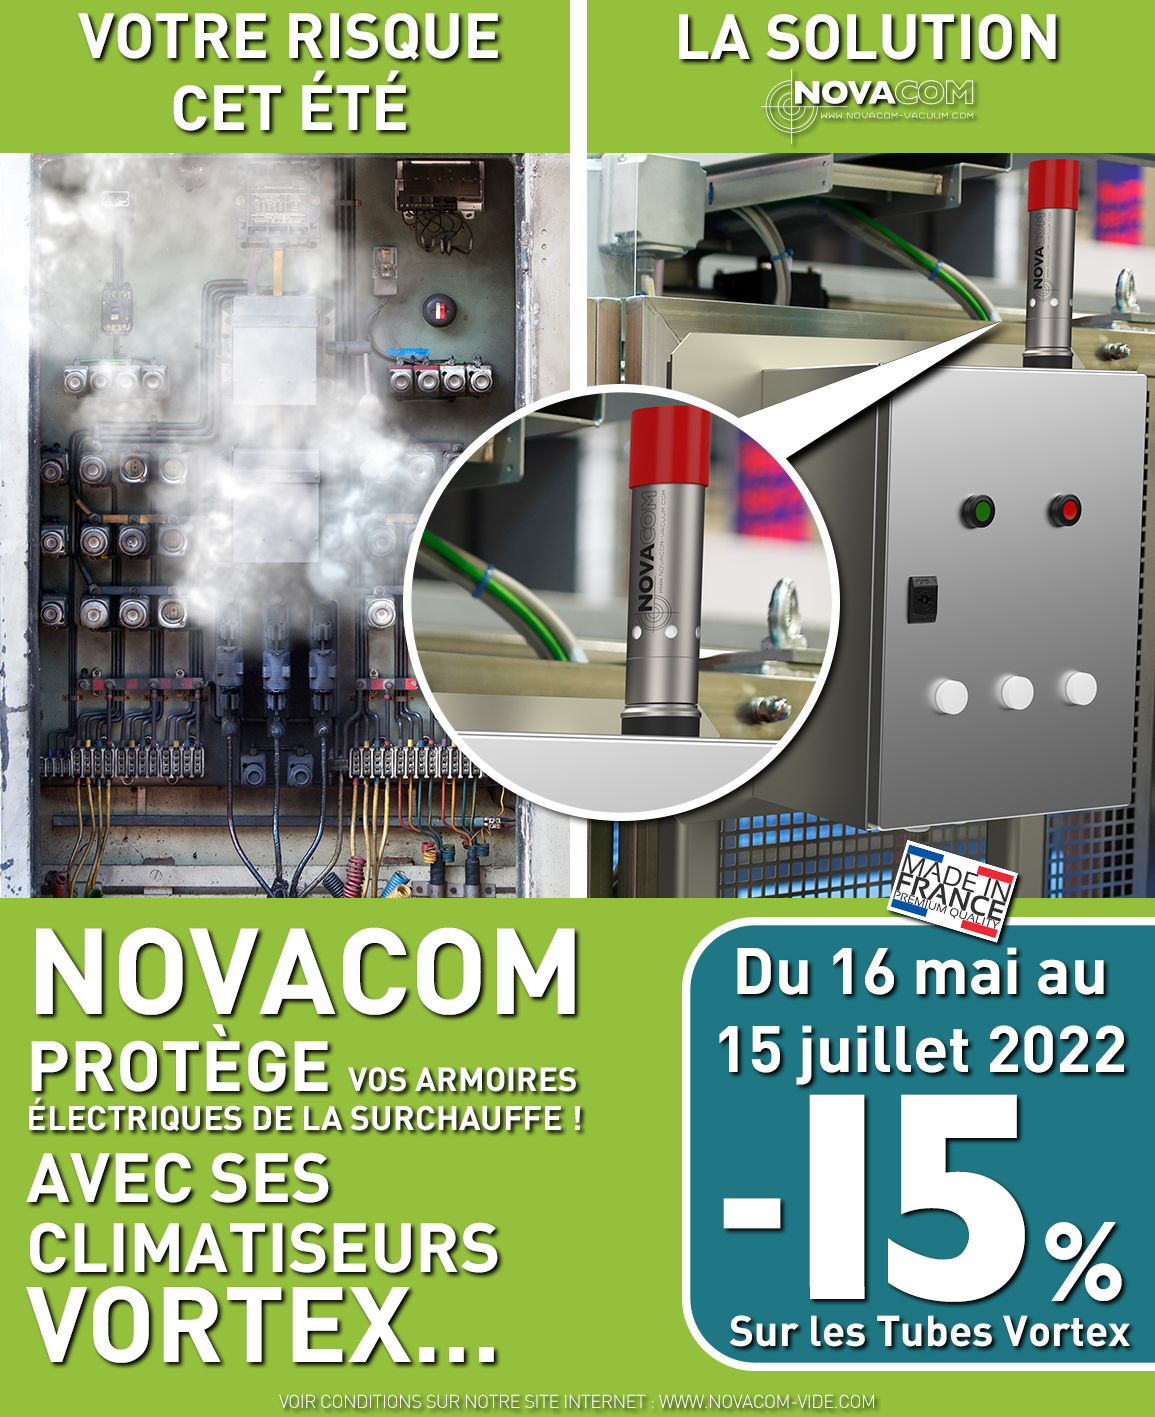 Novacom protège vos armoires électriques avec ses climatiseurs vortex